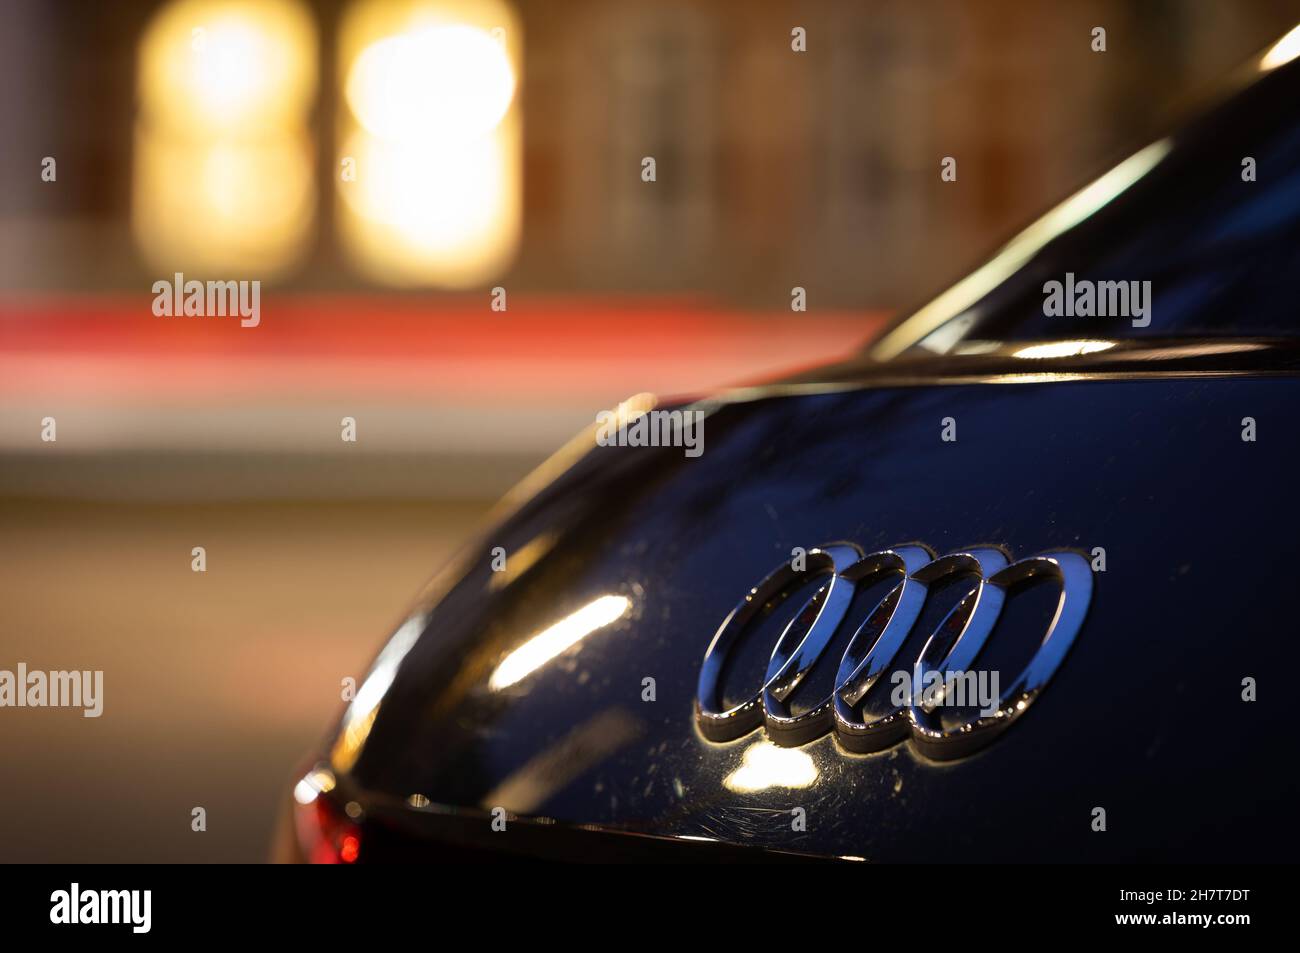 Hanovre, Allemagne.24 novembre 2021.Le logo du constructeur automobile Audi est visible sur un véhicule dans la soirée.La Cour fédérale de justice (BGH) est en cours d'audition sur 25.11.2021 dans le scandale diesel sur des réclamations possibles pour dommages-intérêts contre la filiale Audi de VW.Credit: Moritz Frankenberg/dpa/Alay Live News Banque D'Images